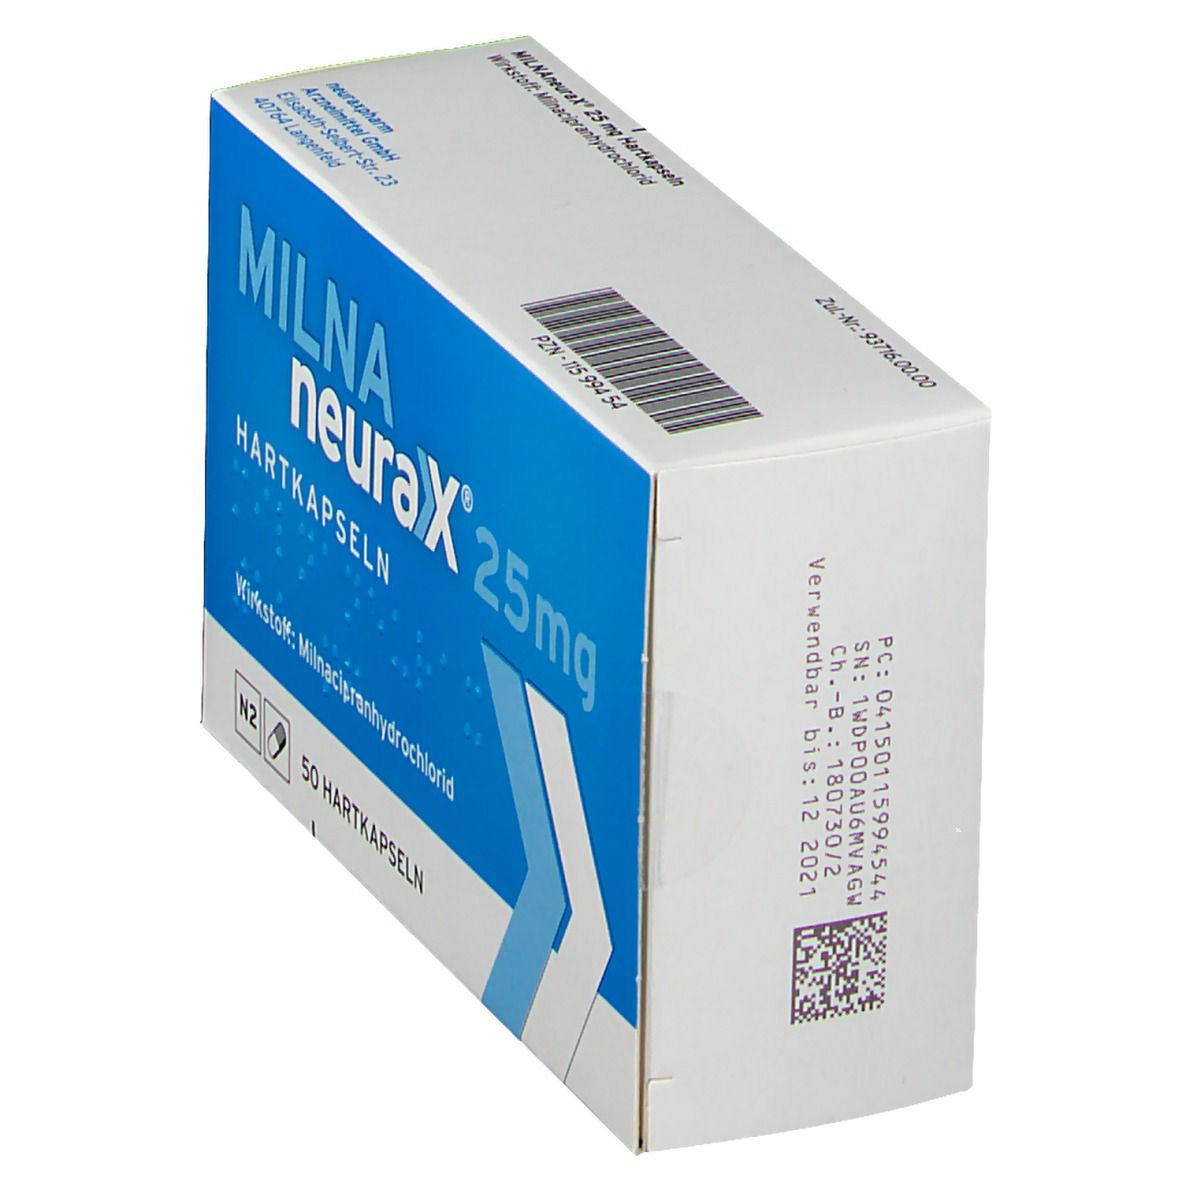 MILNAneurax® 25 mg